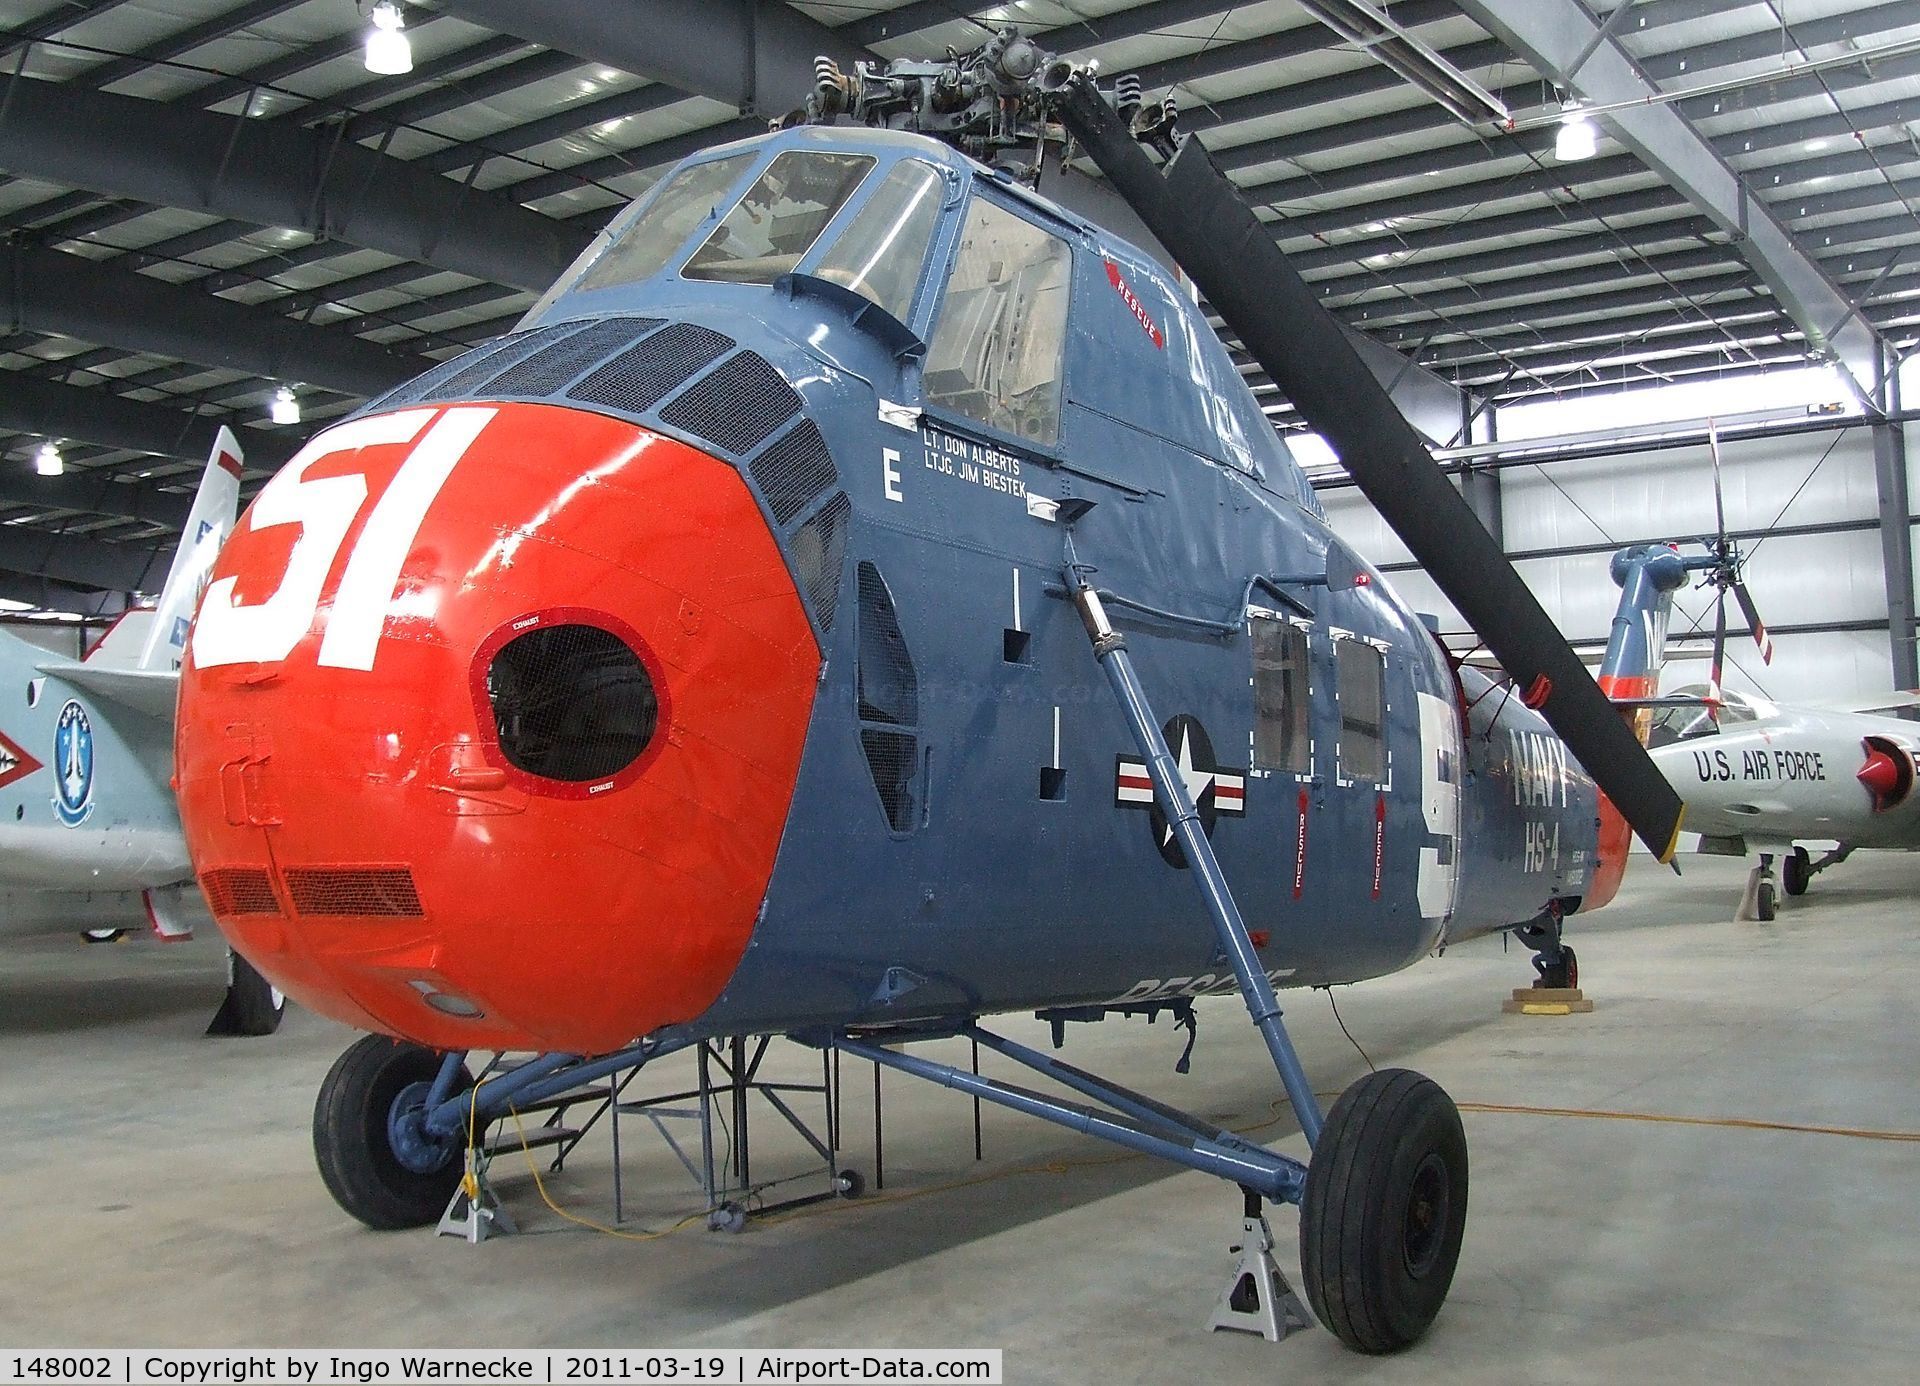 148002, Sikorsky SH-34J Seabat C/N 58-1254, Sikorsky H-34J / HSS-1N Seabat at the Pueblo Weisbrod Aircraft Museum, Pueblo CO